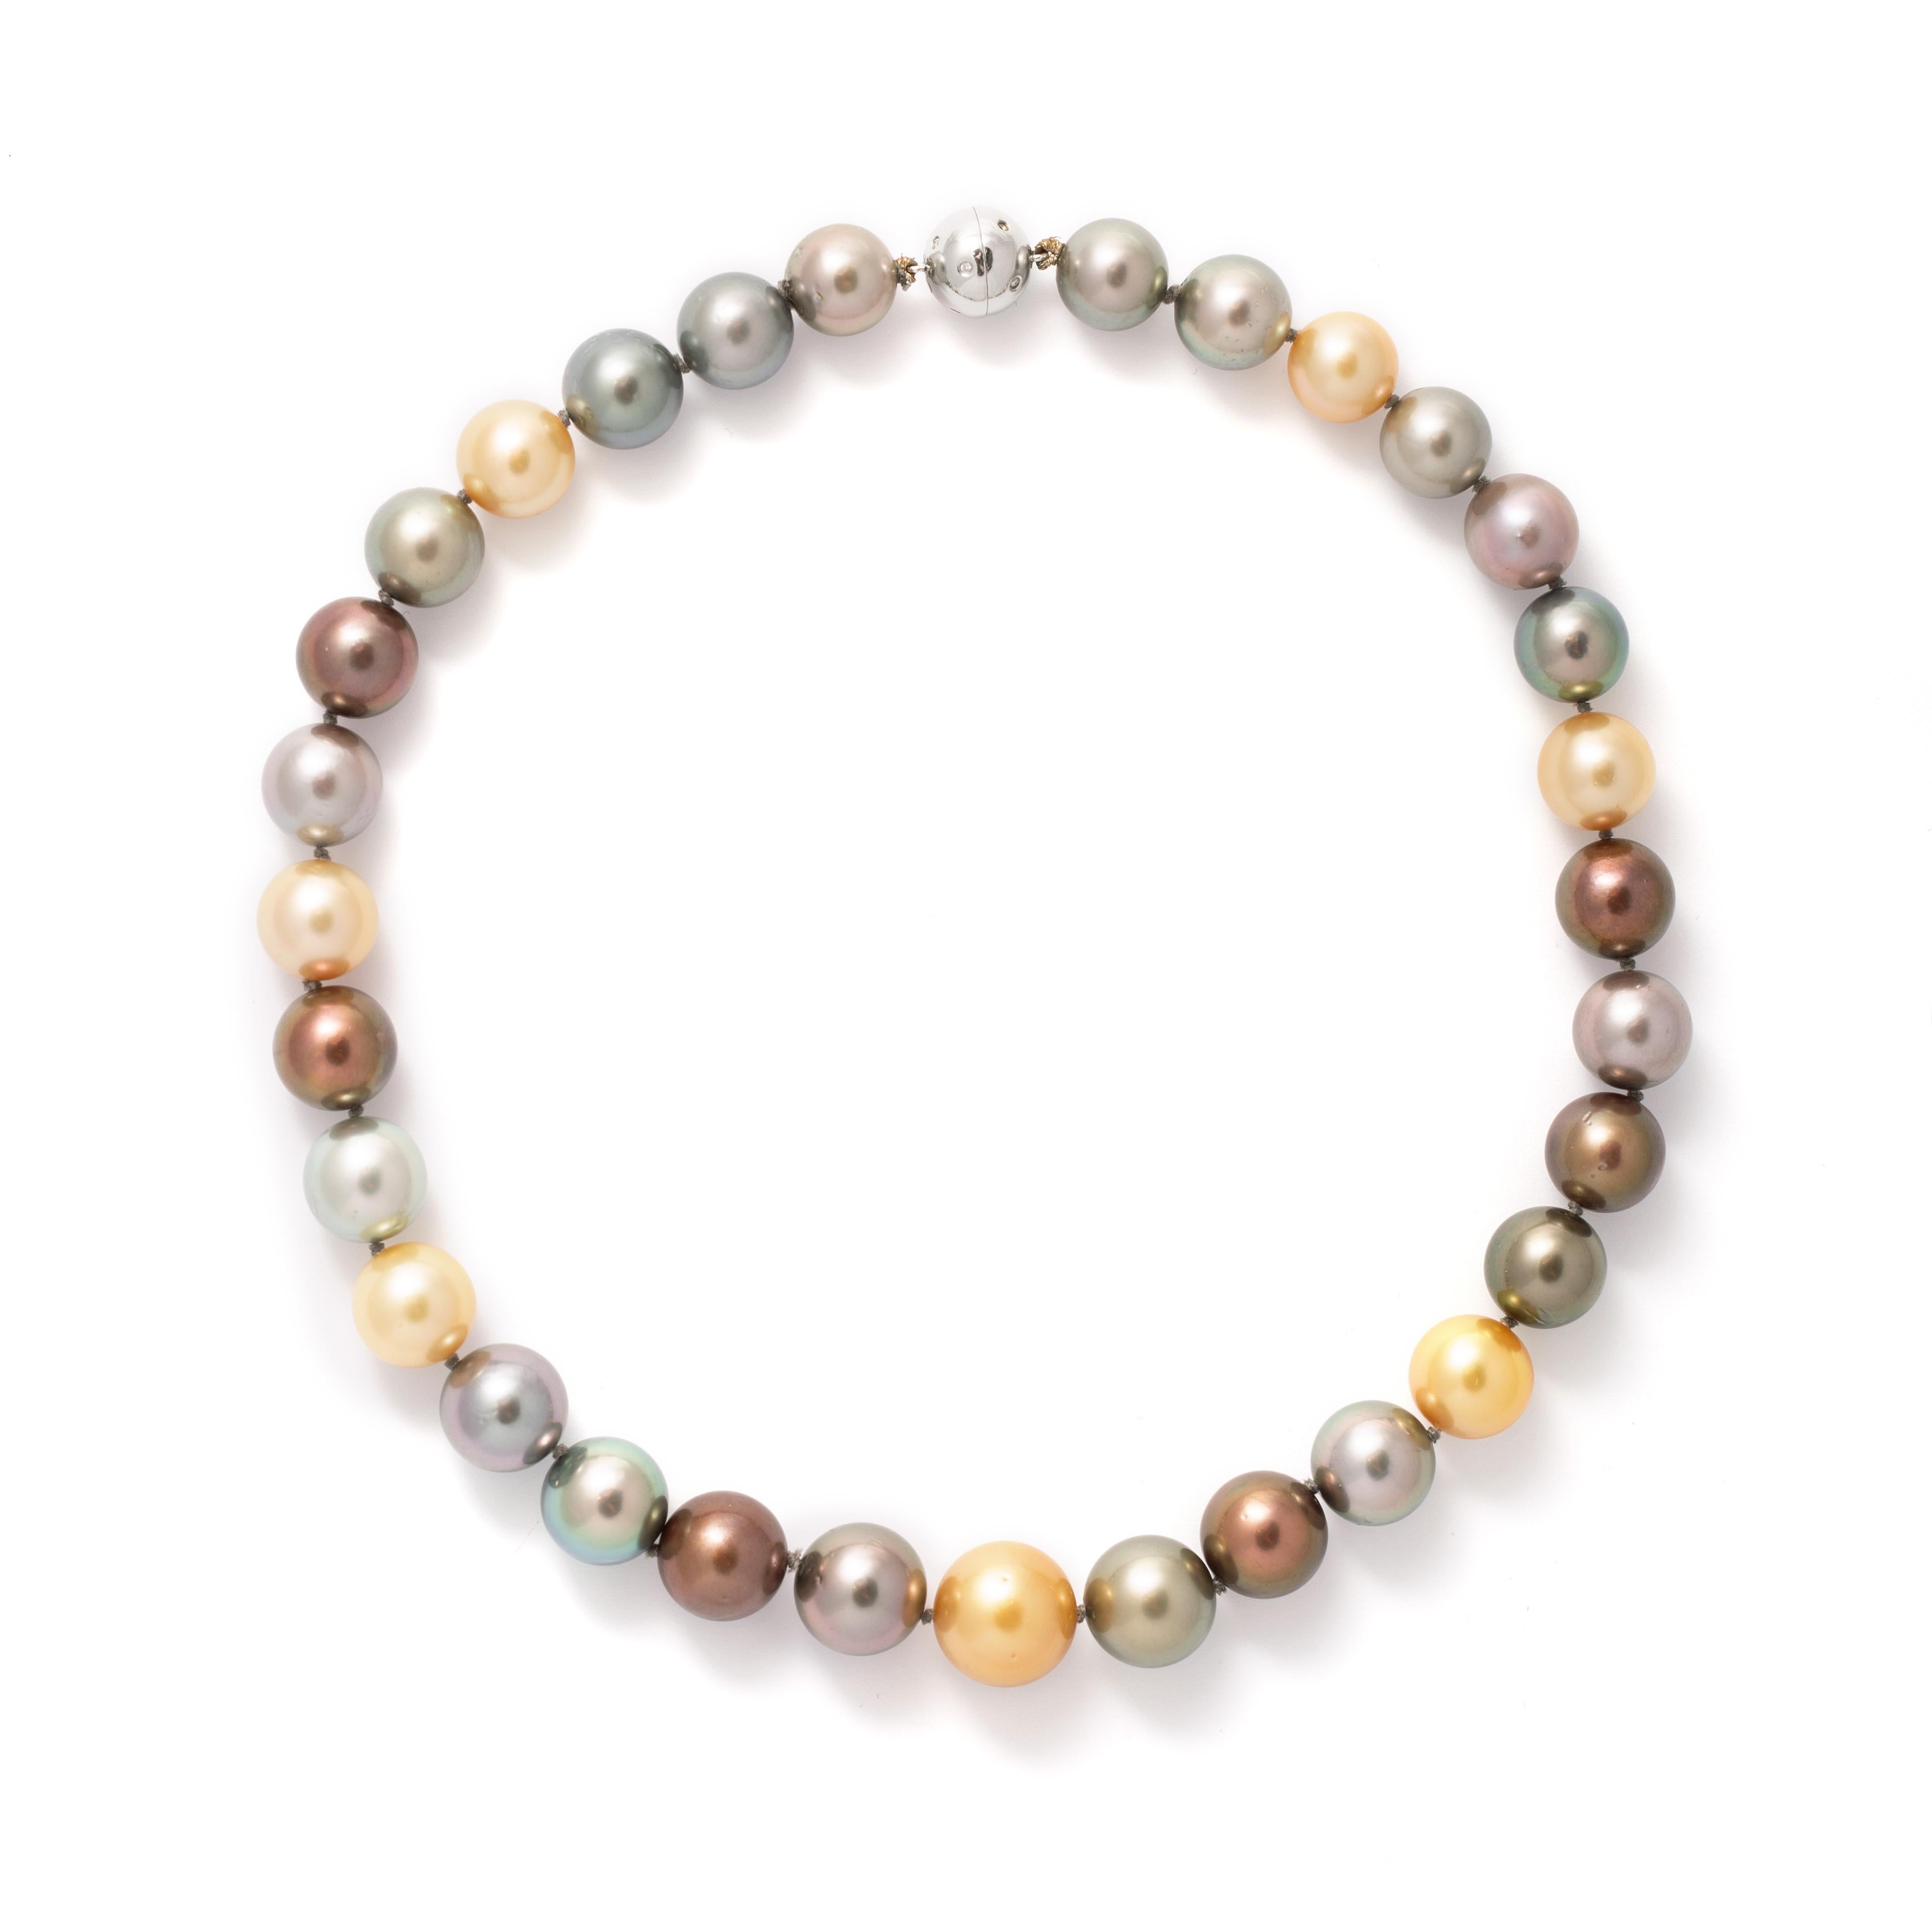 Collier de perles de culture de couleur en or blanc et fermoir en diamant.

Longueur totale : 18,11 pouces (46,00 centimètres).
Poids total : 103,83 grammes.
